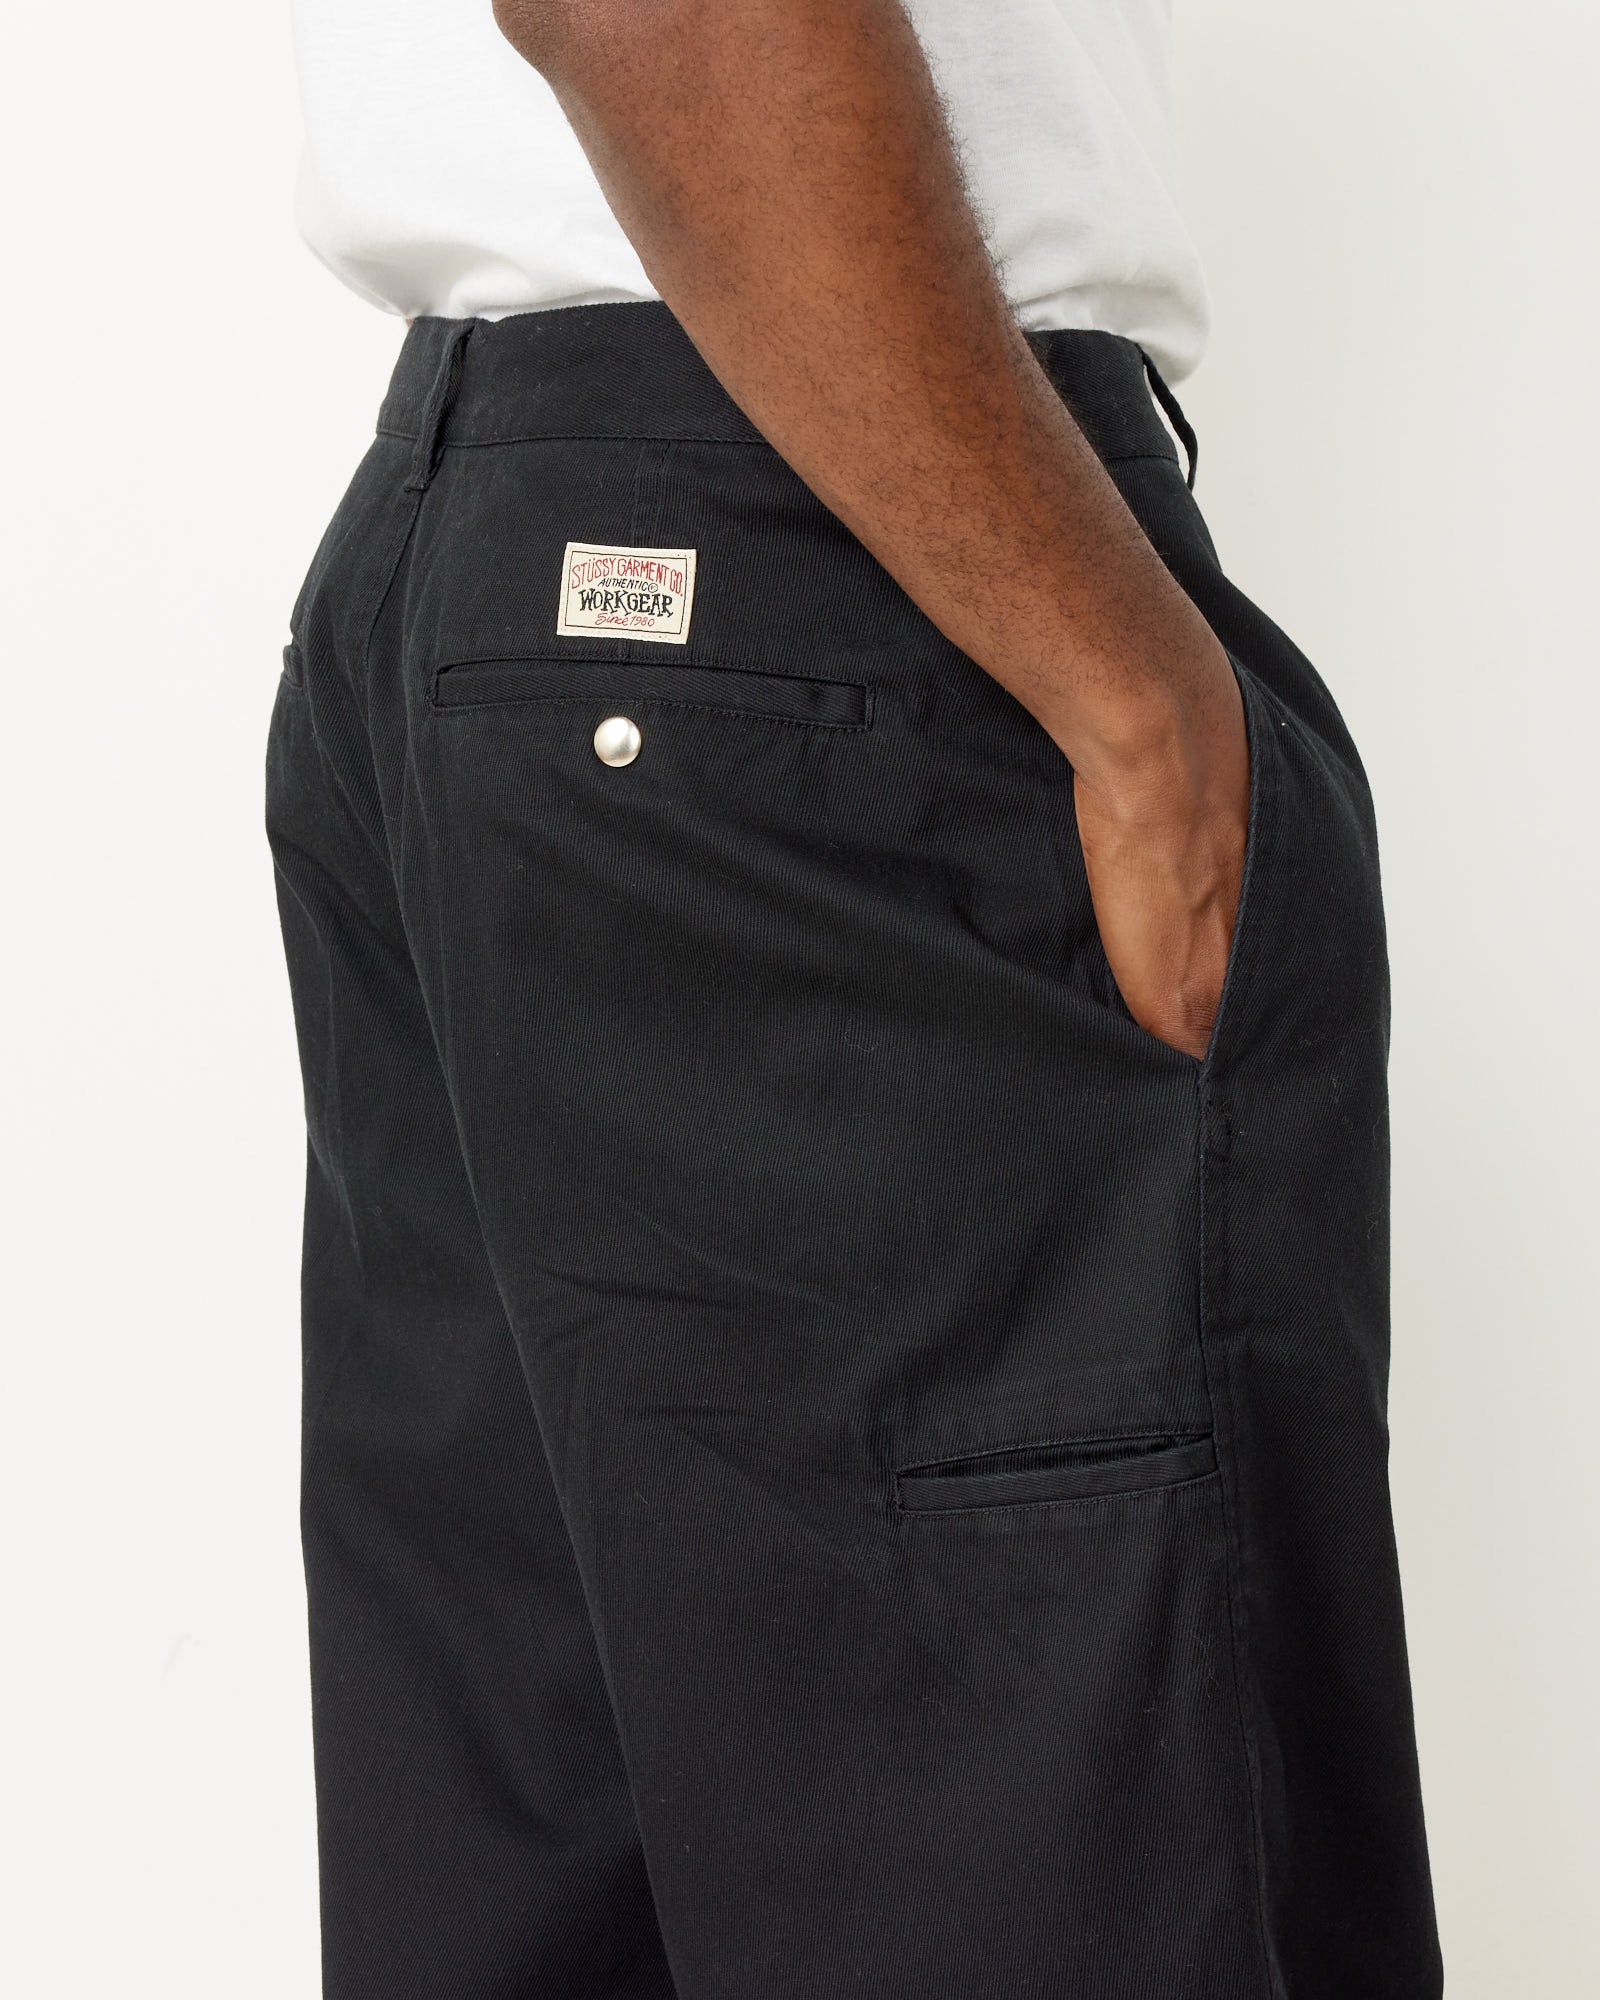 Workgear Trousers in Black